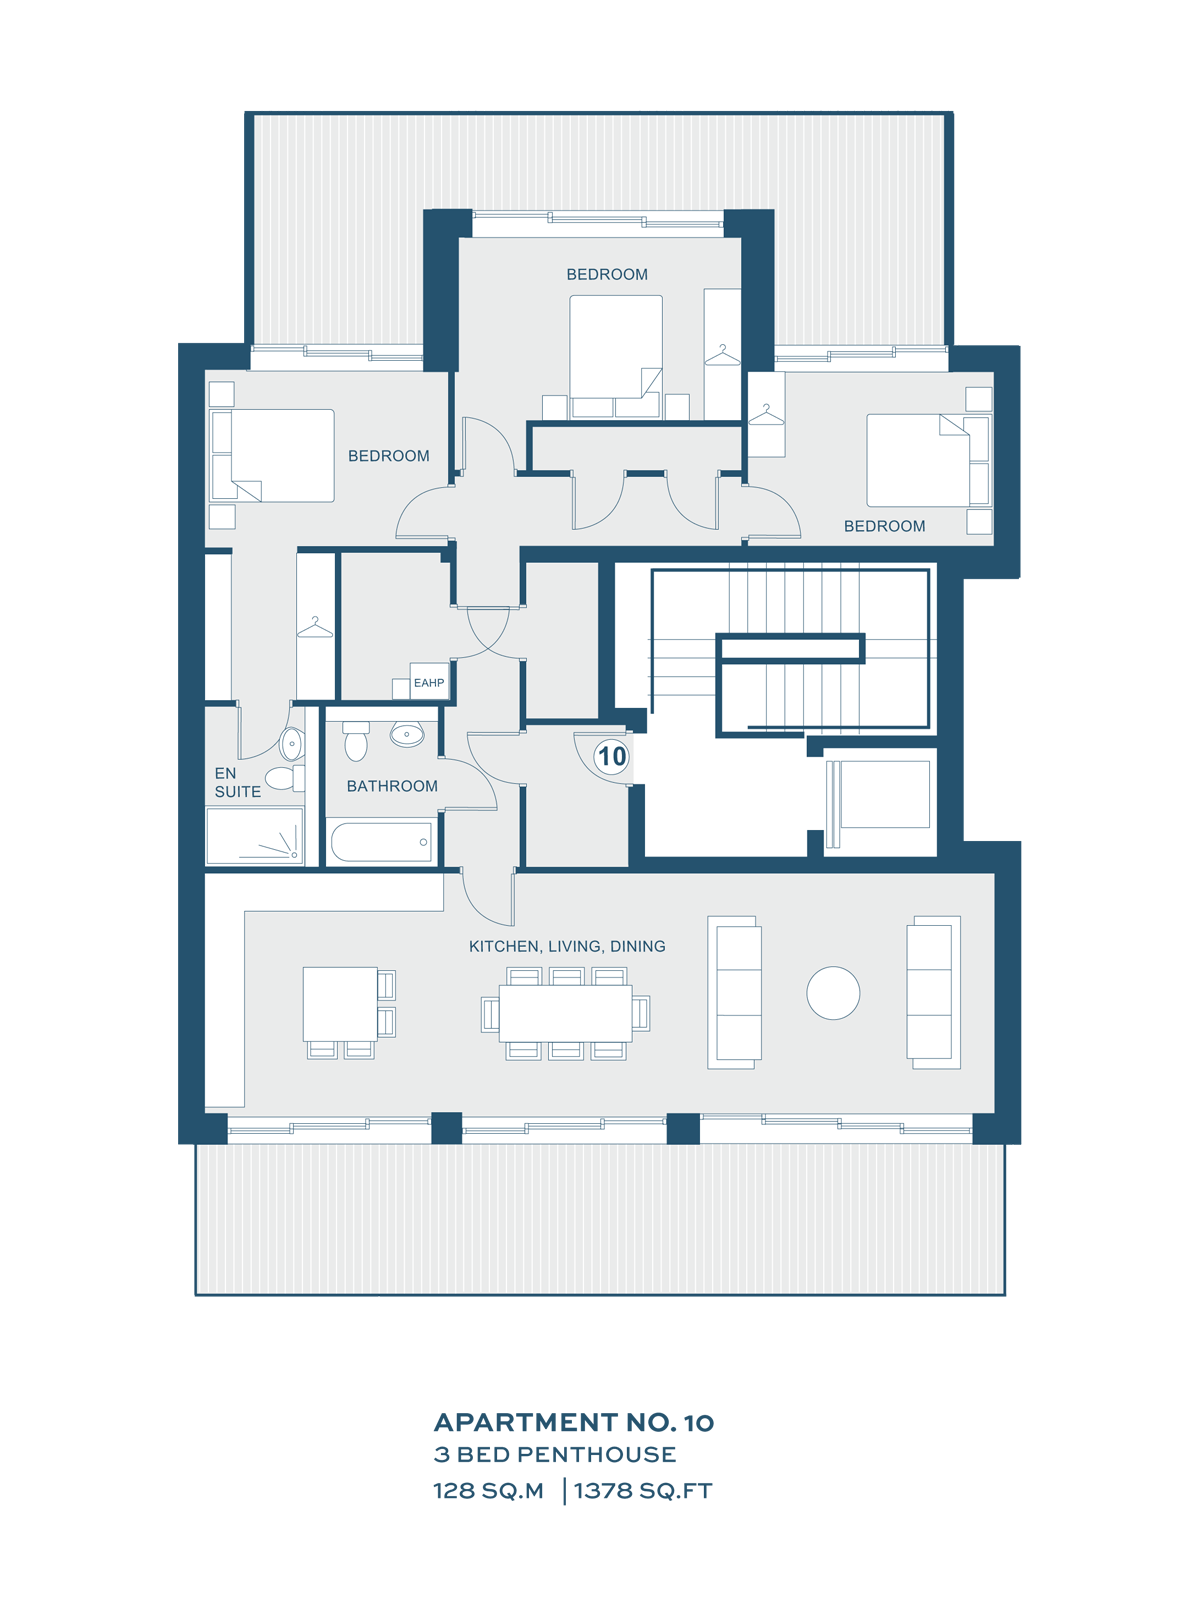 Penthouse Floor Plans